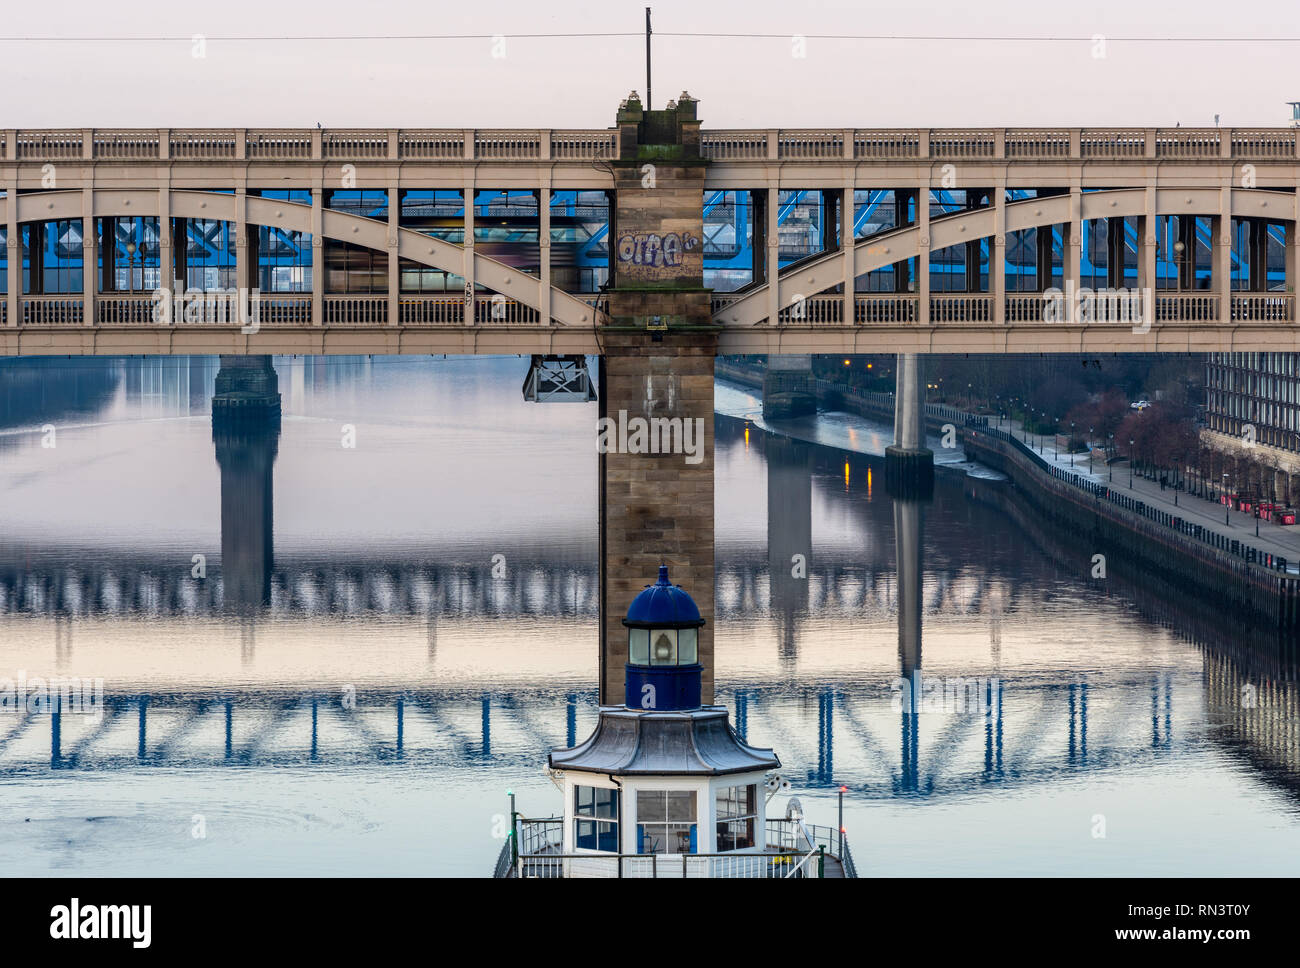 Newcastle, Angleterre, Royaume-Uni - 5 Février 2019 : un bus traverse le pont de haut niveau sur la rivière Tyne entre Newcastle et Gateshead. Banque D'Images